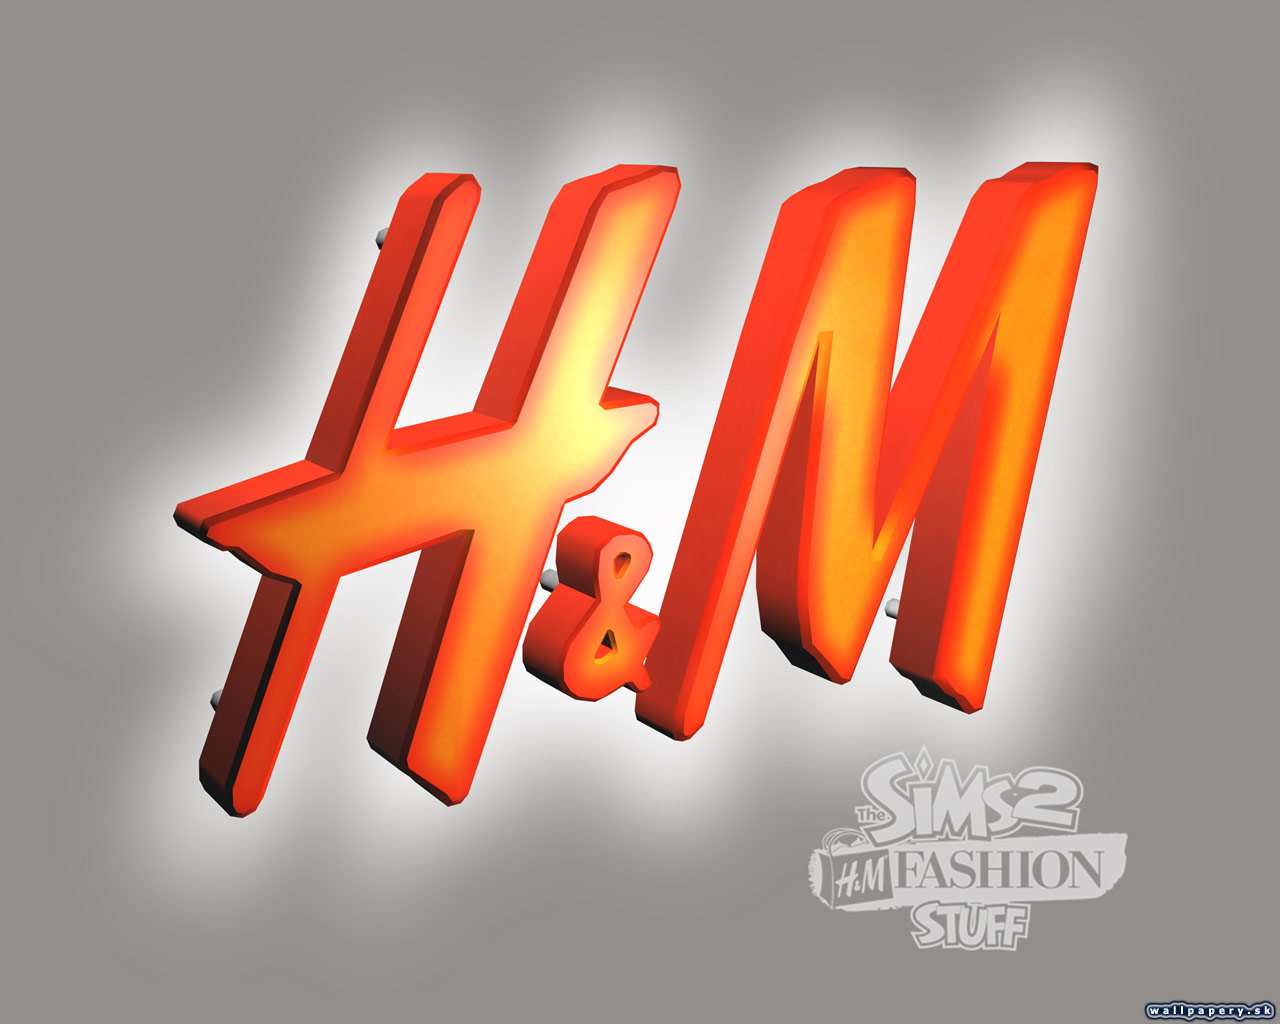 The Sims 2: H&M Fashion Stuff - wallpaper 3